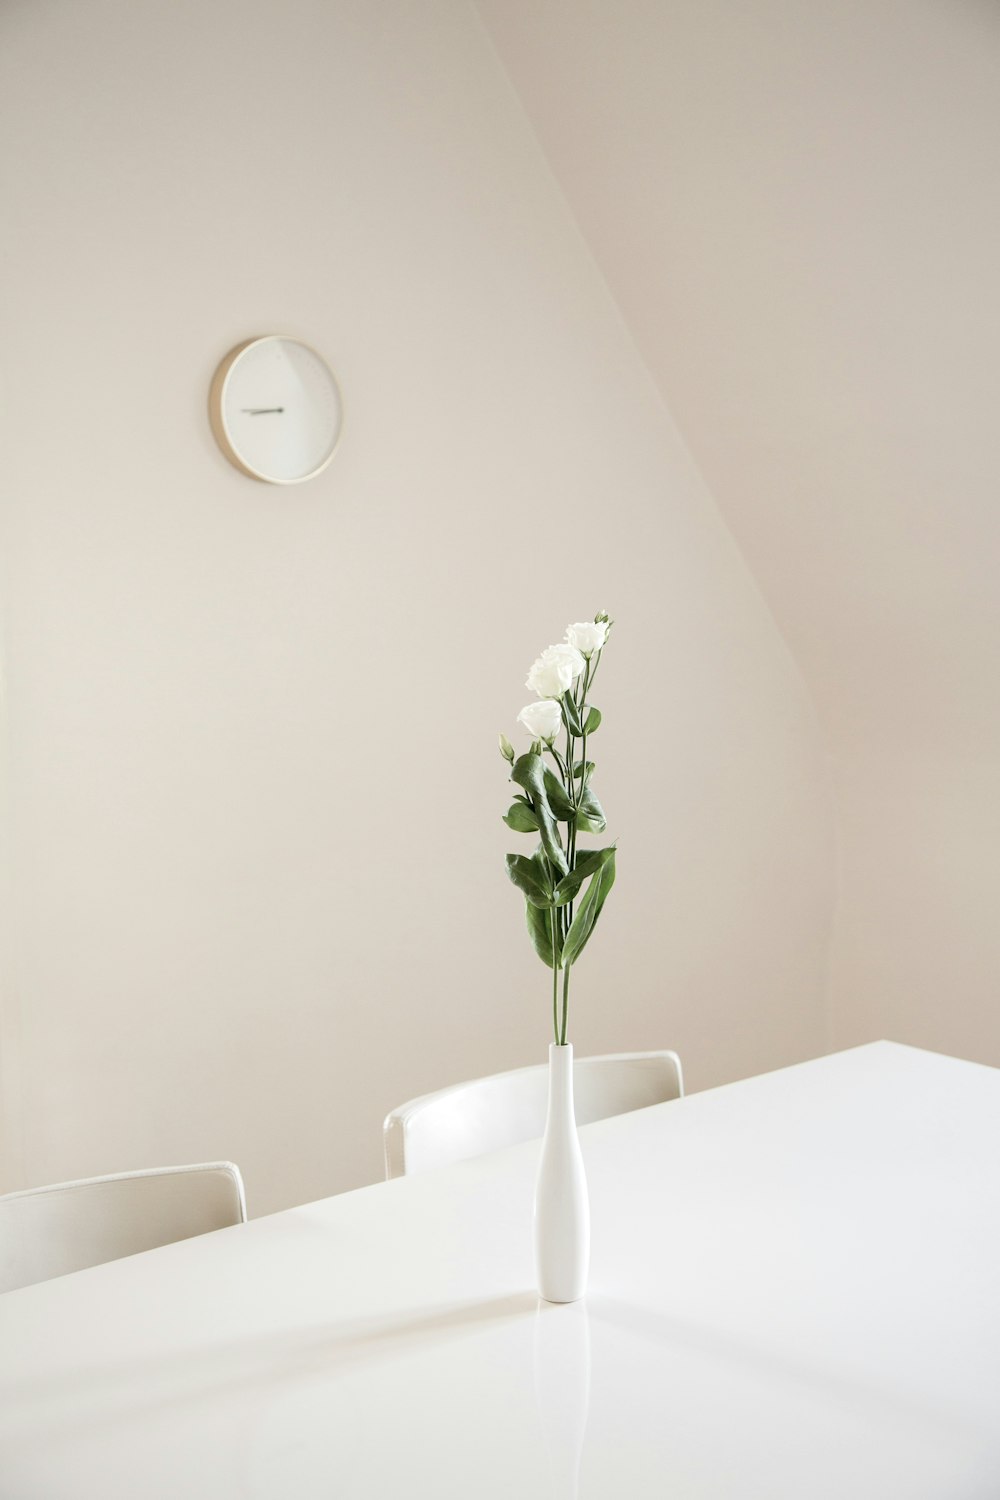 흰색 테이블 위에 흰색 세라믹 꽃병에 흰색 꽃